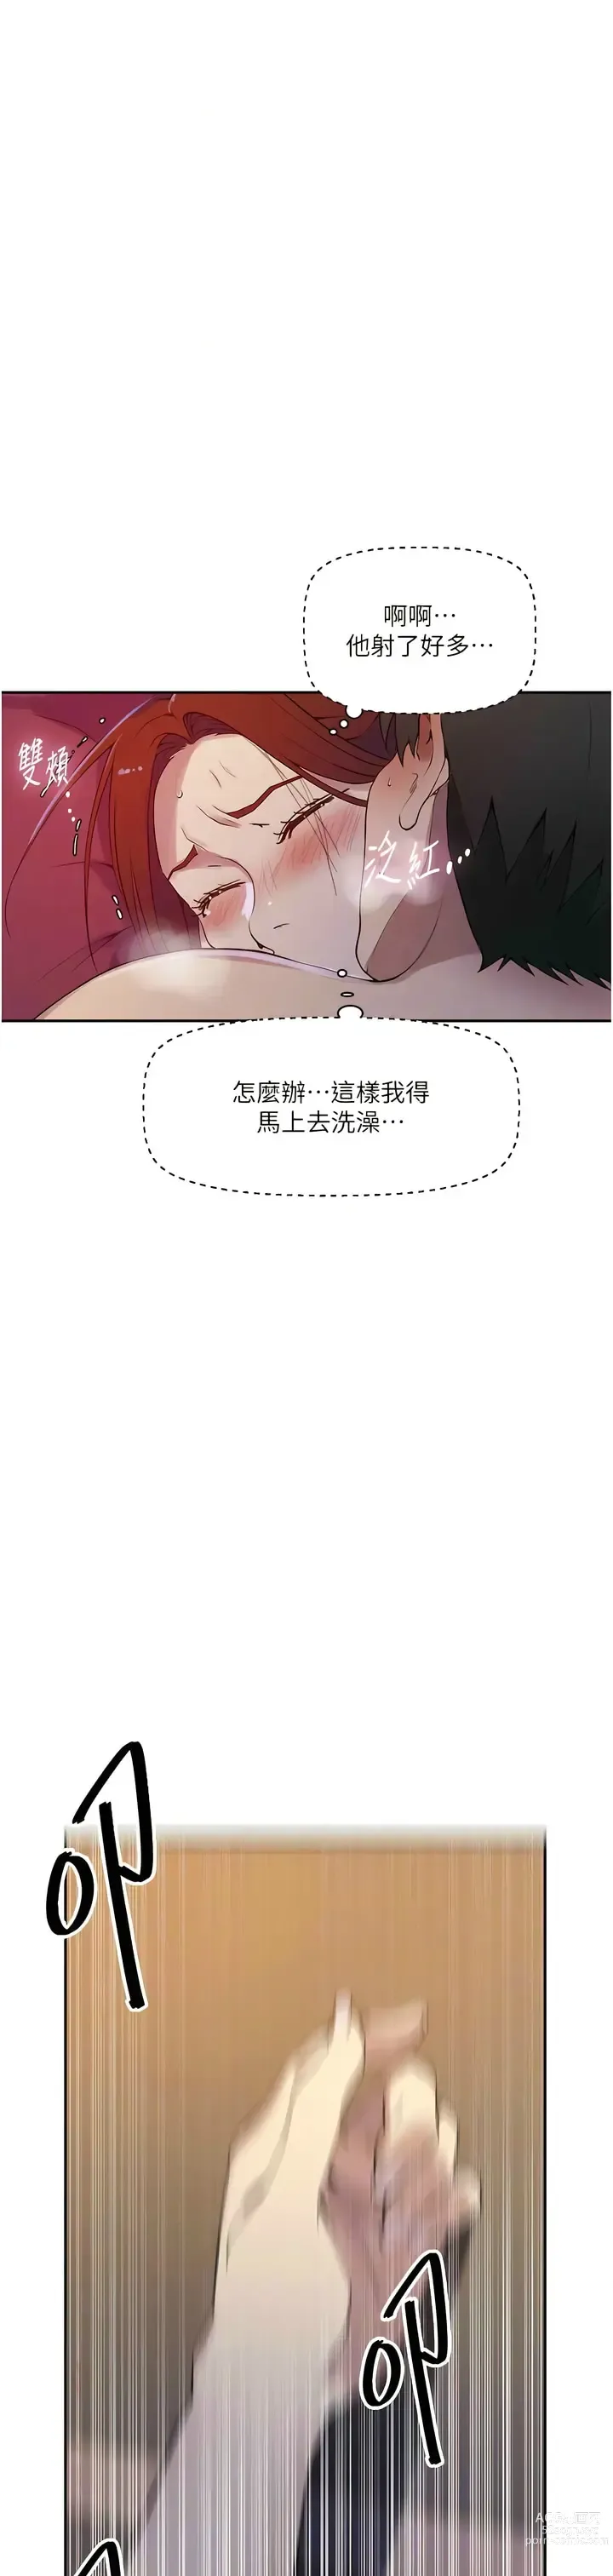 Page 888 of manga 秘密教学/The Class Of The Secret 181-208